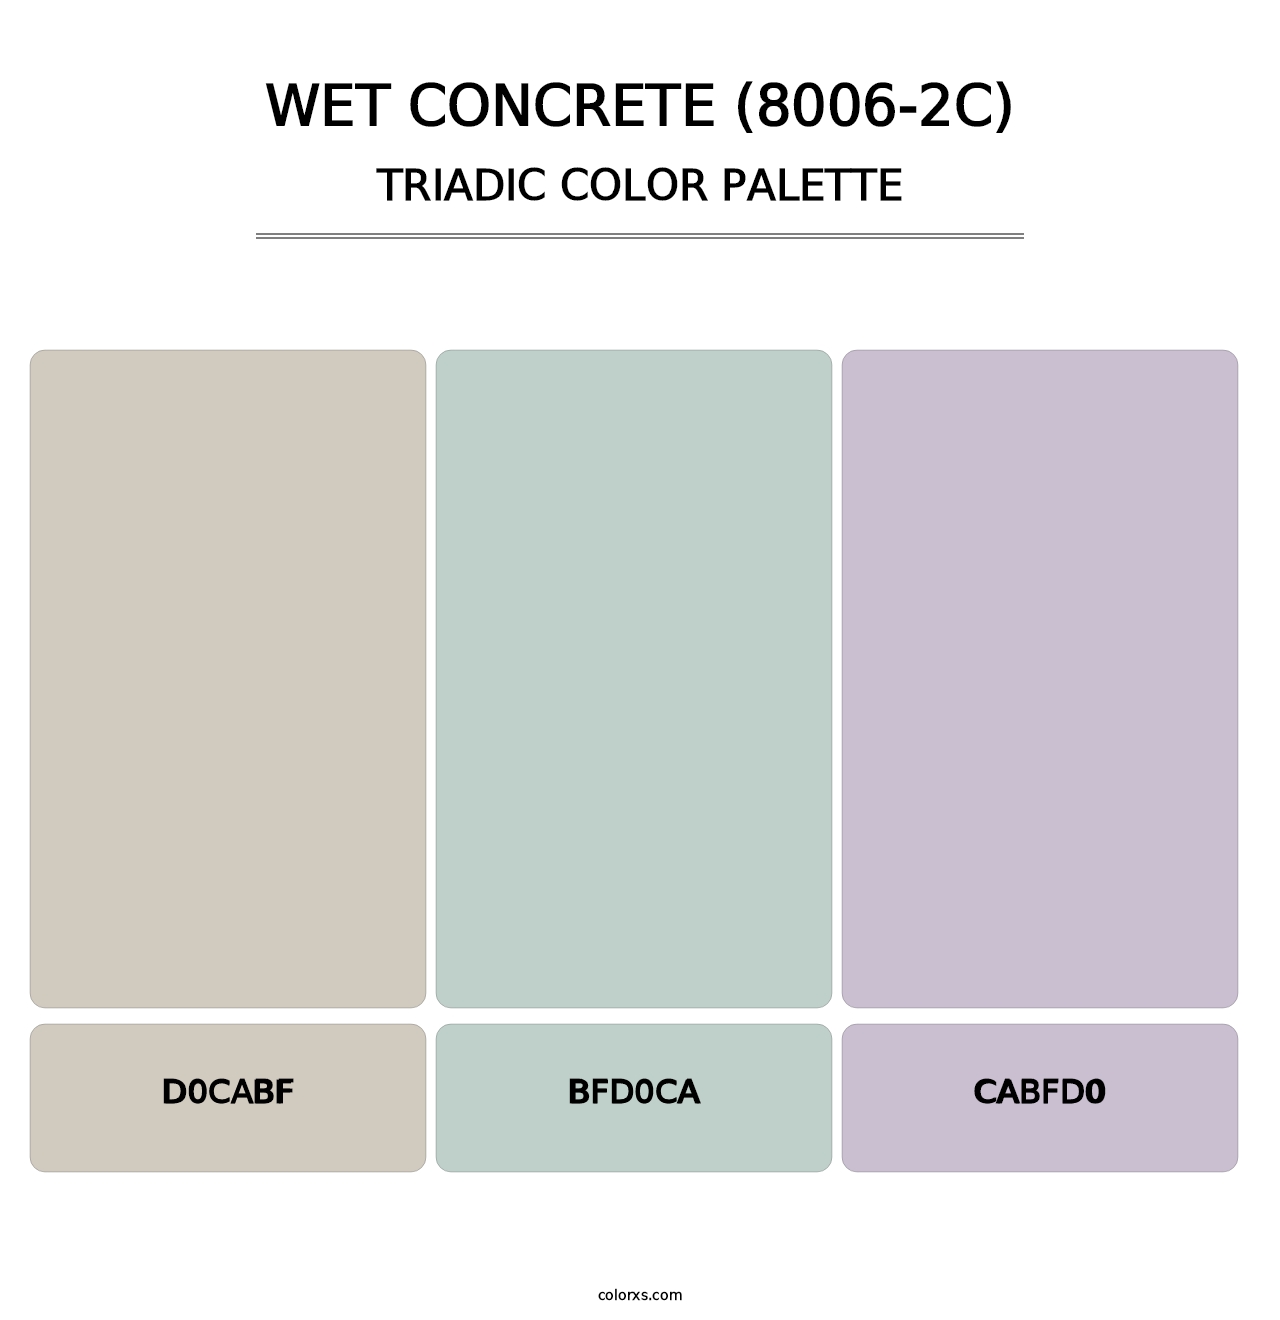 Wet Concrete (8006-2C) - Triadic Color Palette